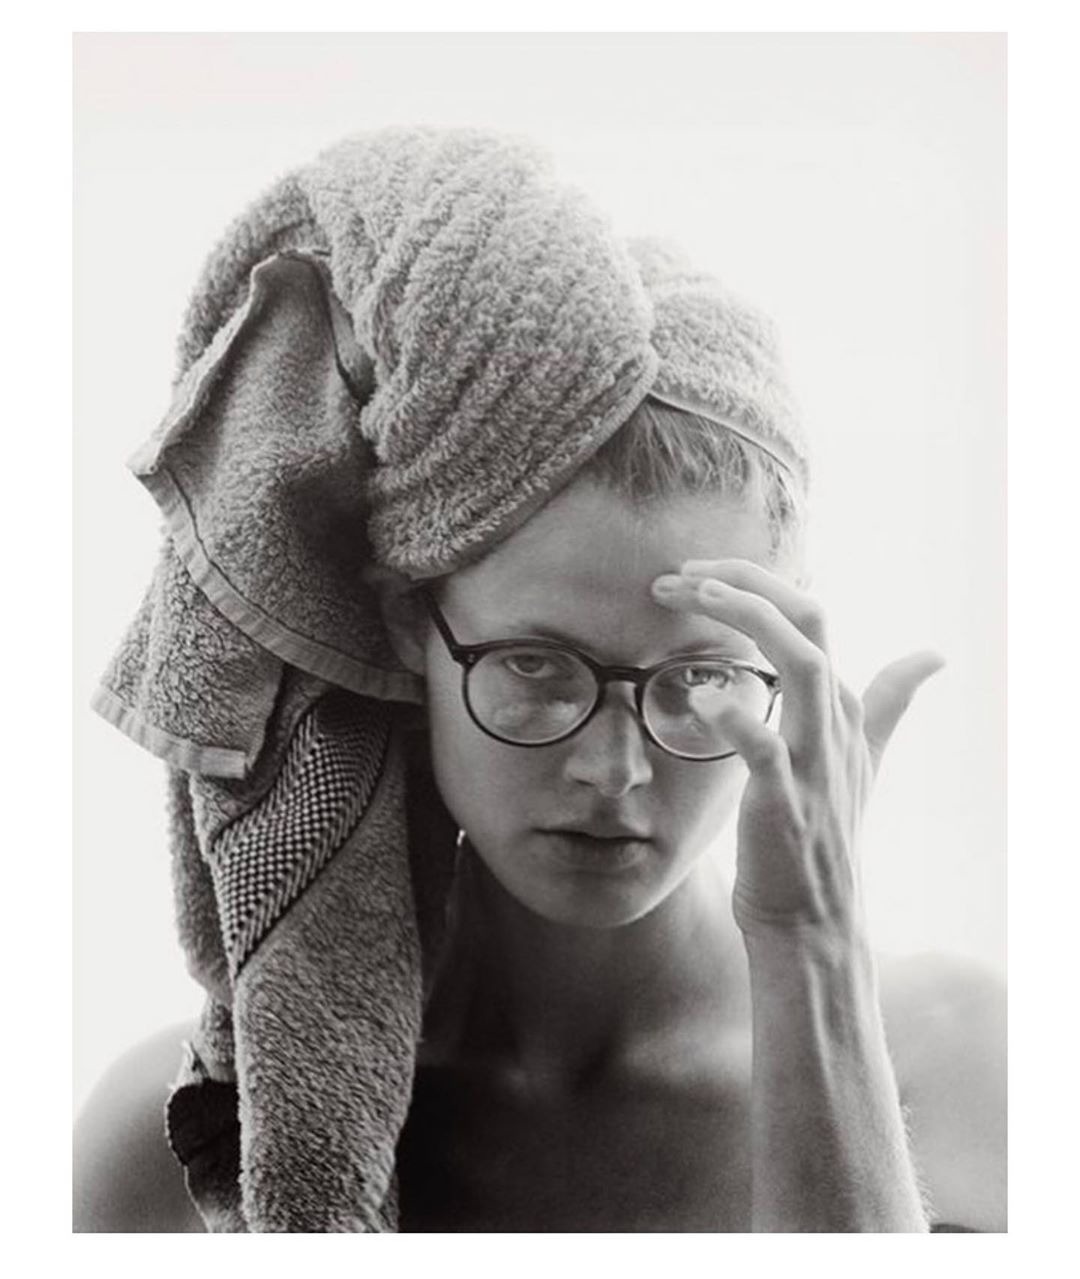 Karlie Kloss'dan Stephanie Broek'e Haftanın Güzellik Instagramları